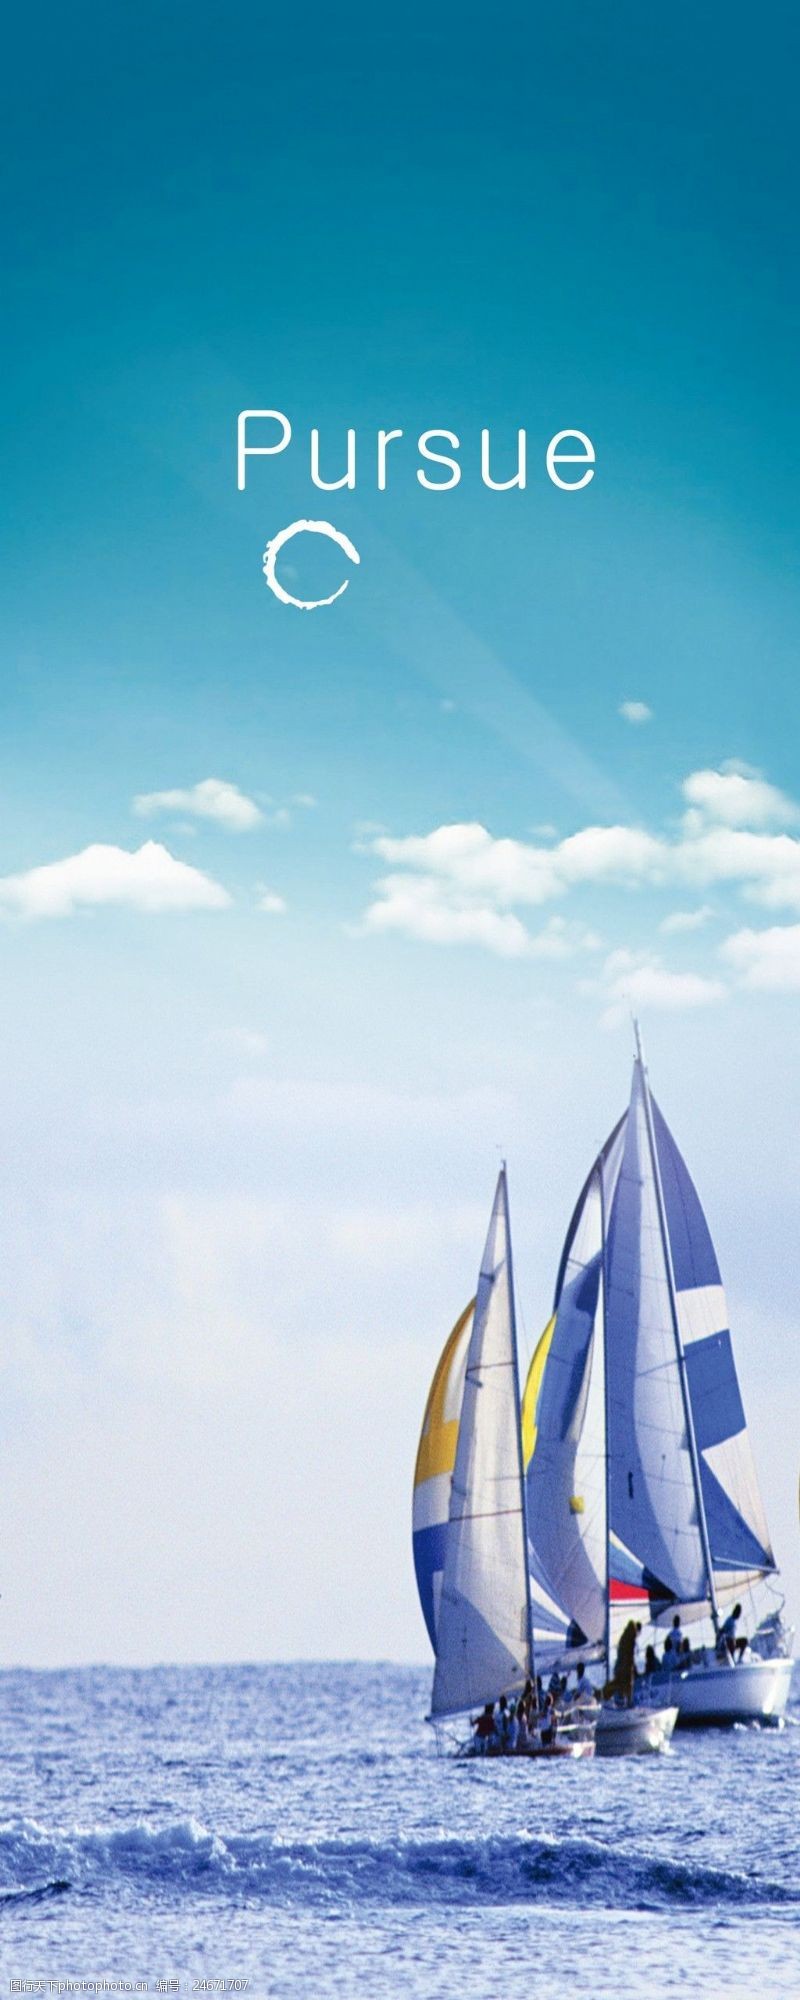 帆船领航领航企业文化海报